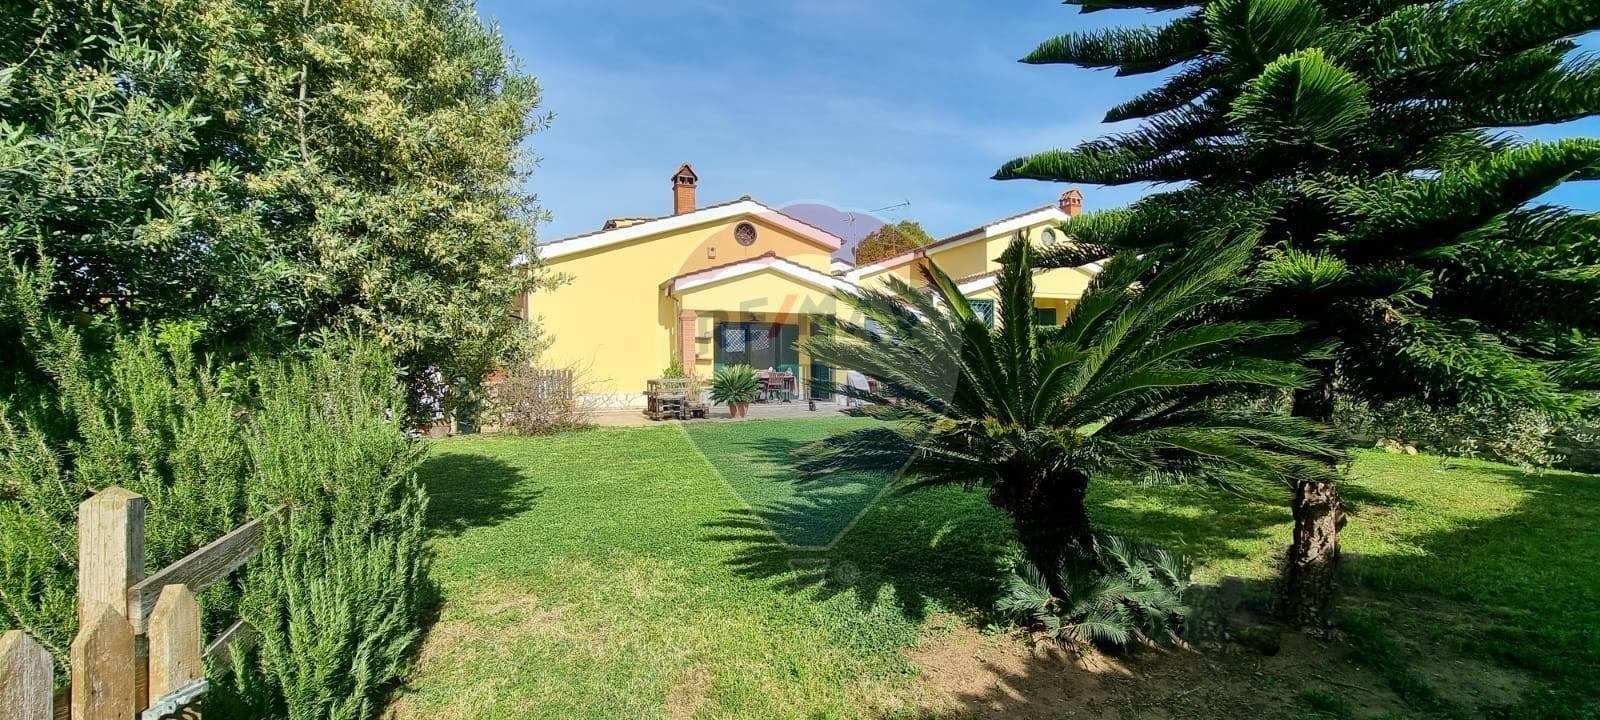 Villa singola in vendita a Pomezia, Colli di Enea